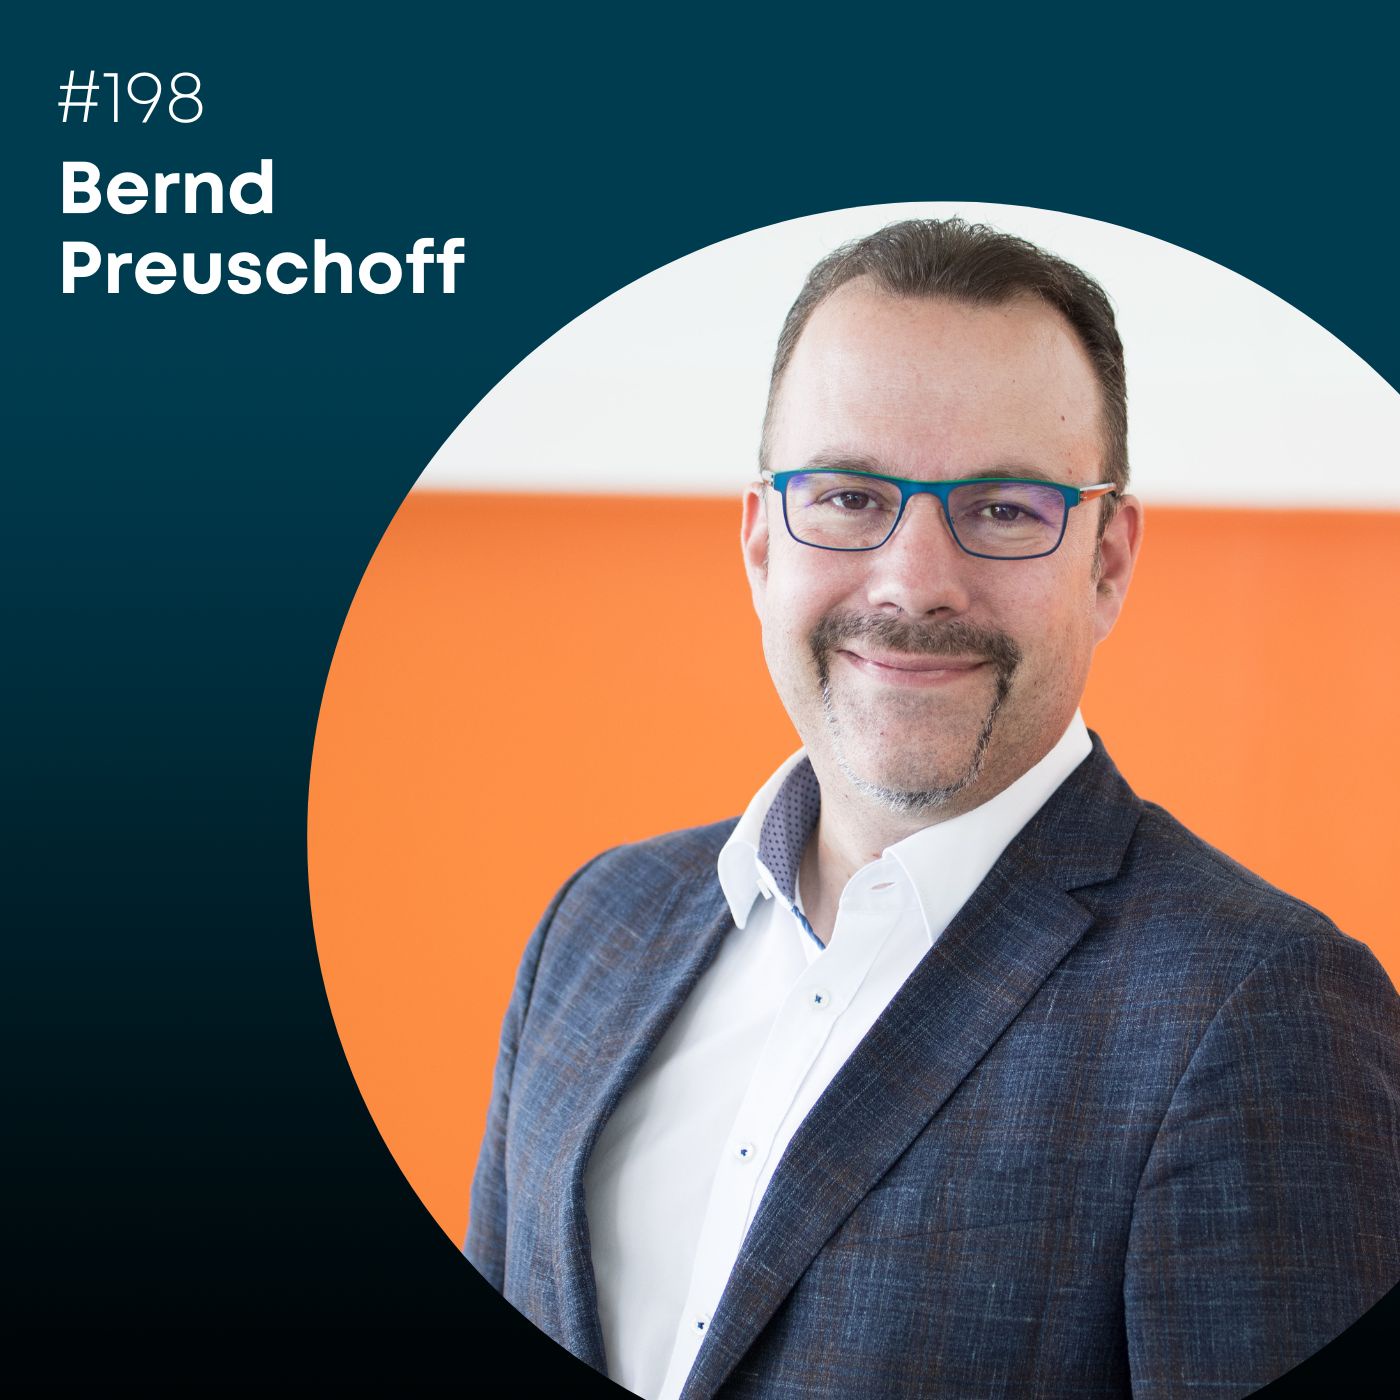 Folge 198: Bernd Preuschoff, wie verdient man Geld mit Sicherheit?